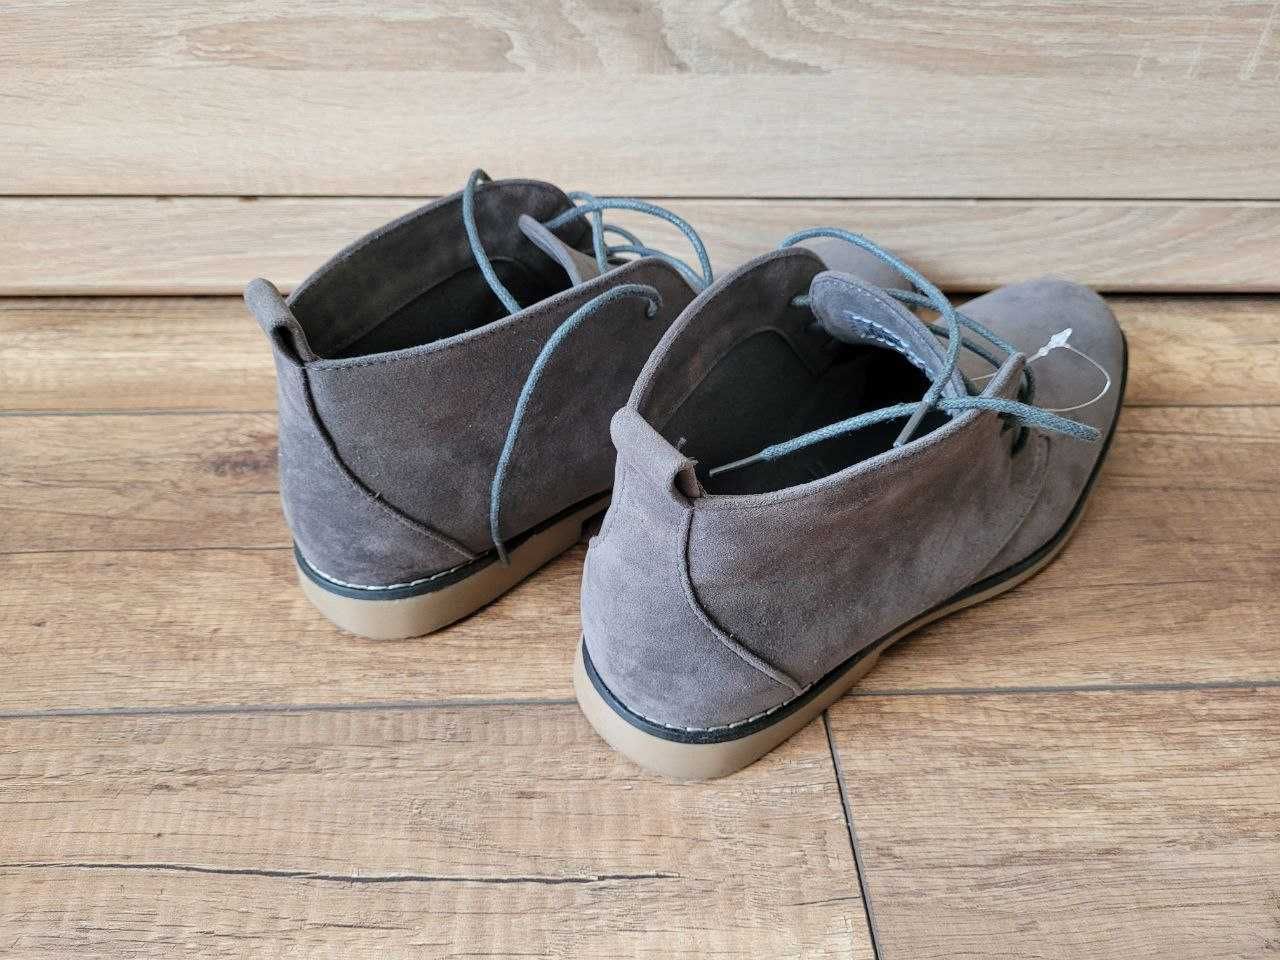 Продам мужские туфли, полуботинки замшевые серые 44 размер